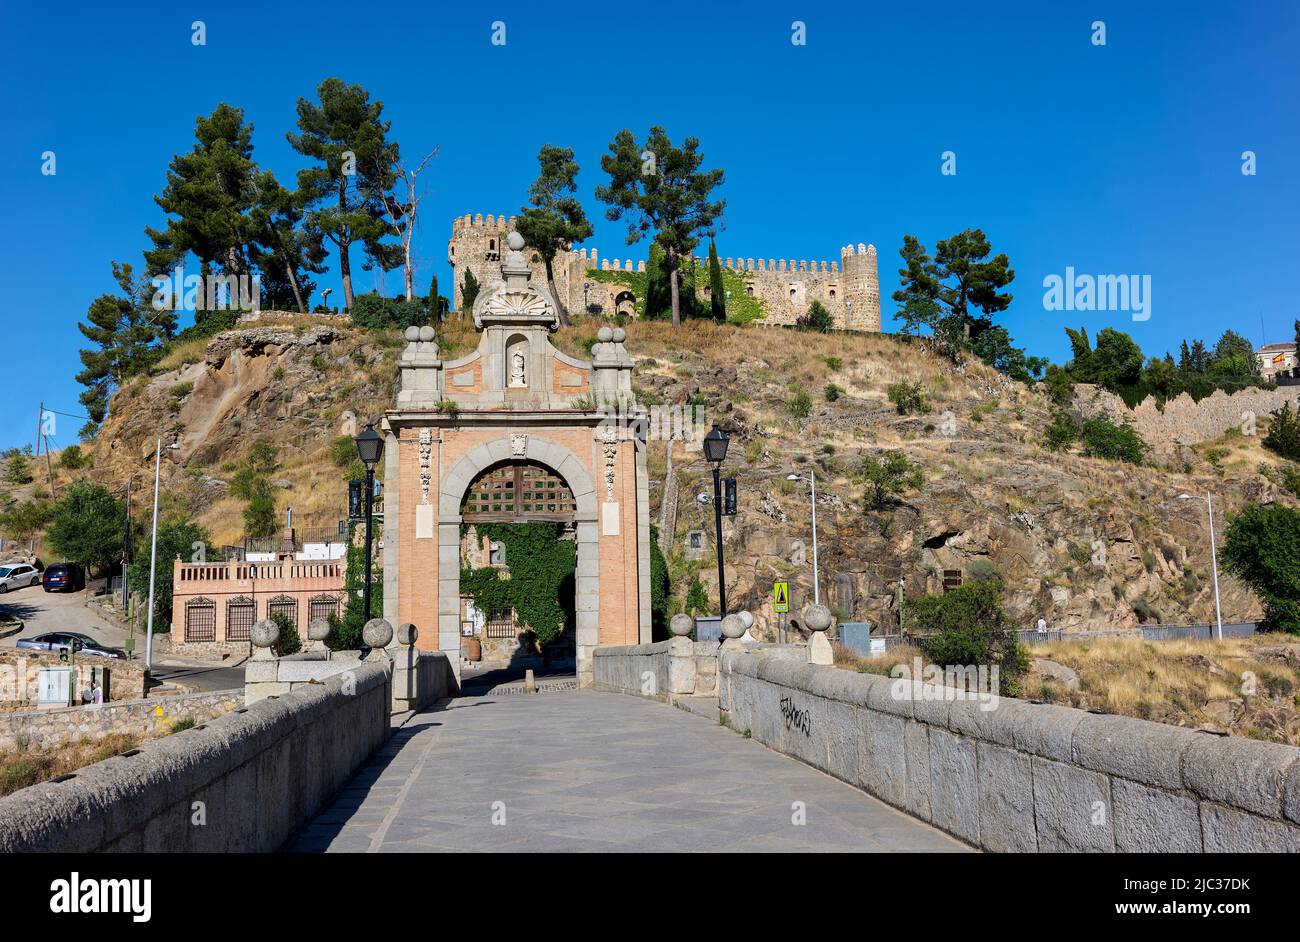 The Alcantara bridge. Toledo, Spain. Stock Photo